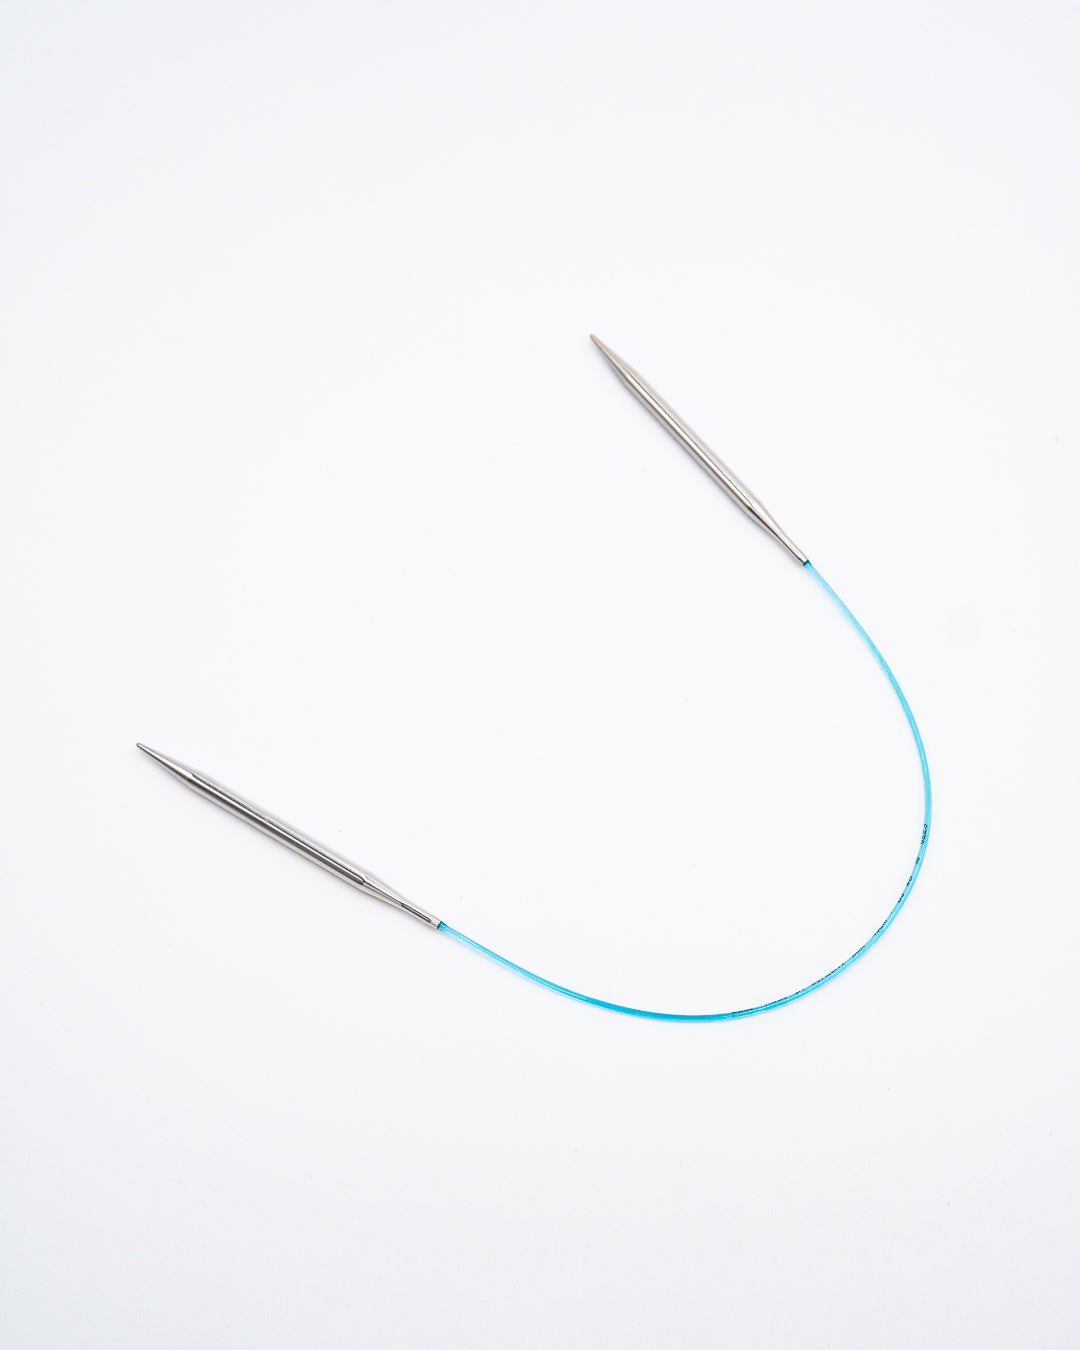 Addi Circular Knitting Needles - Rocket (16" / 40 cm)